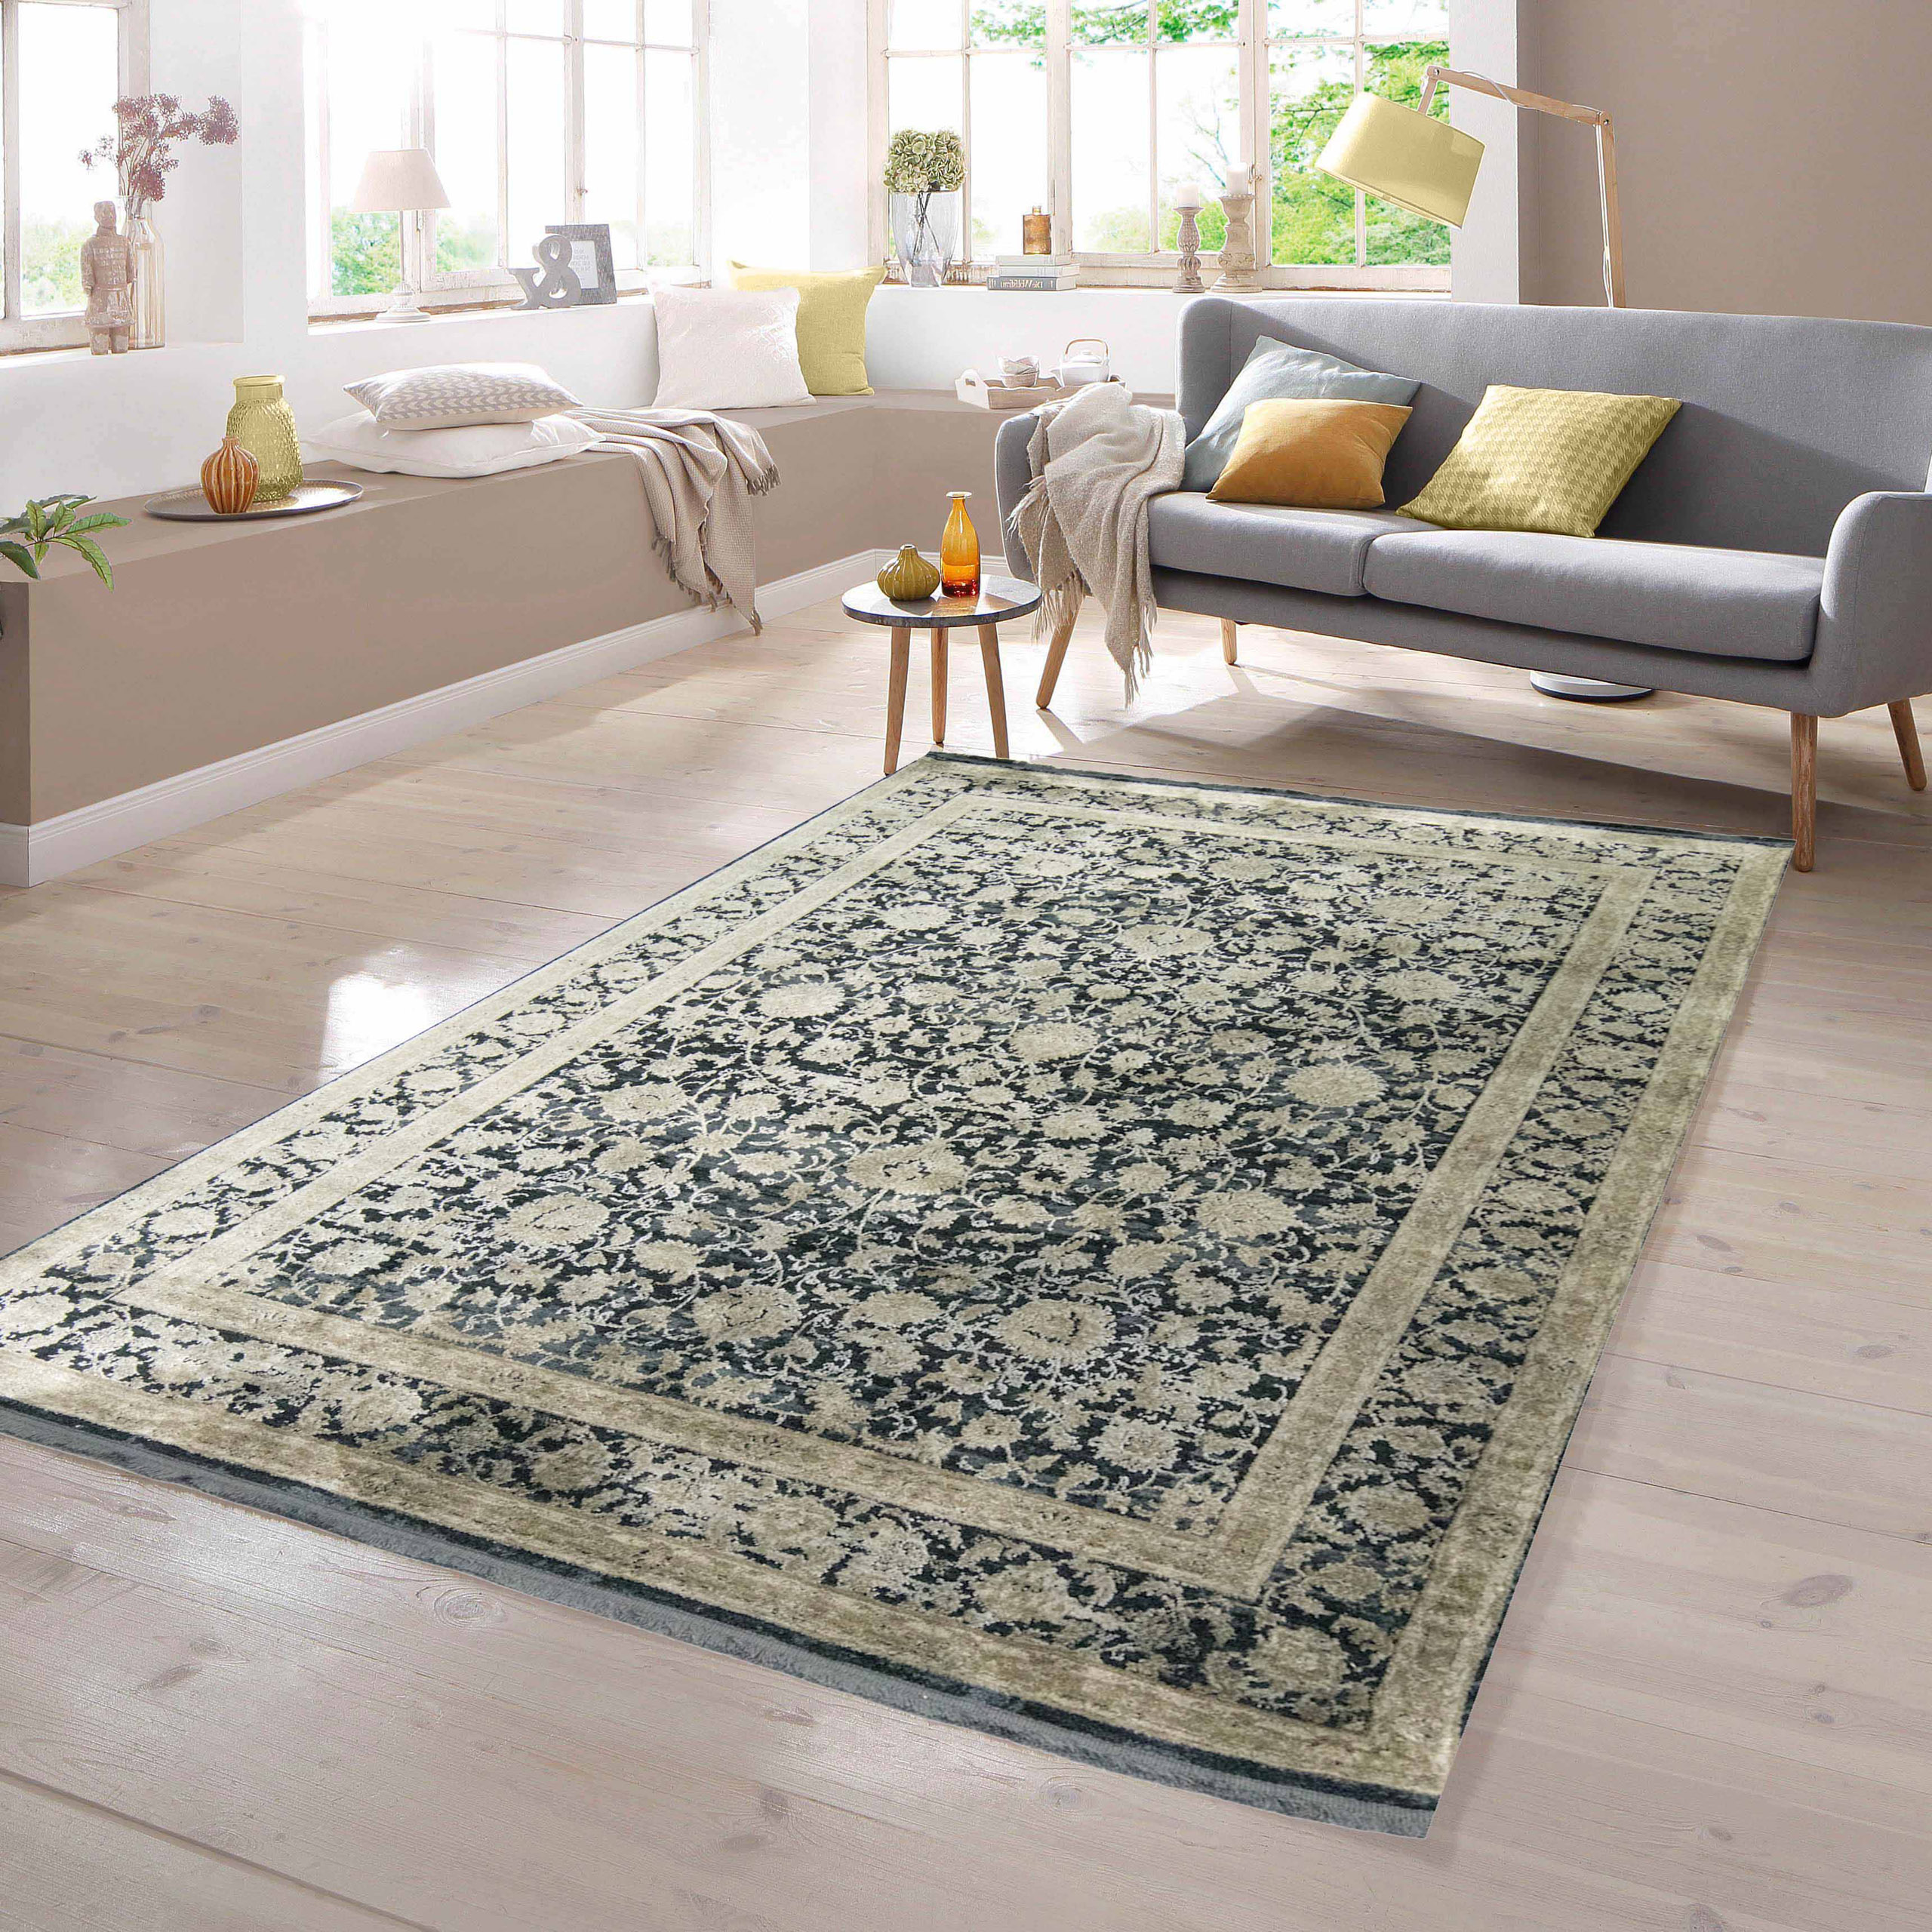 TeppichHome24 - Orientalische Teppiche guter günstig kaufen Qualität online